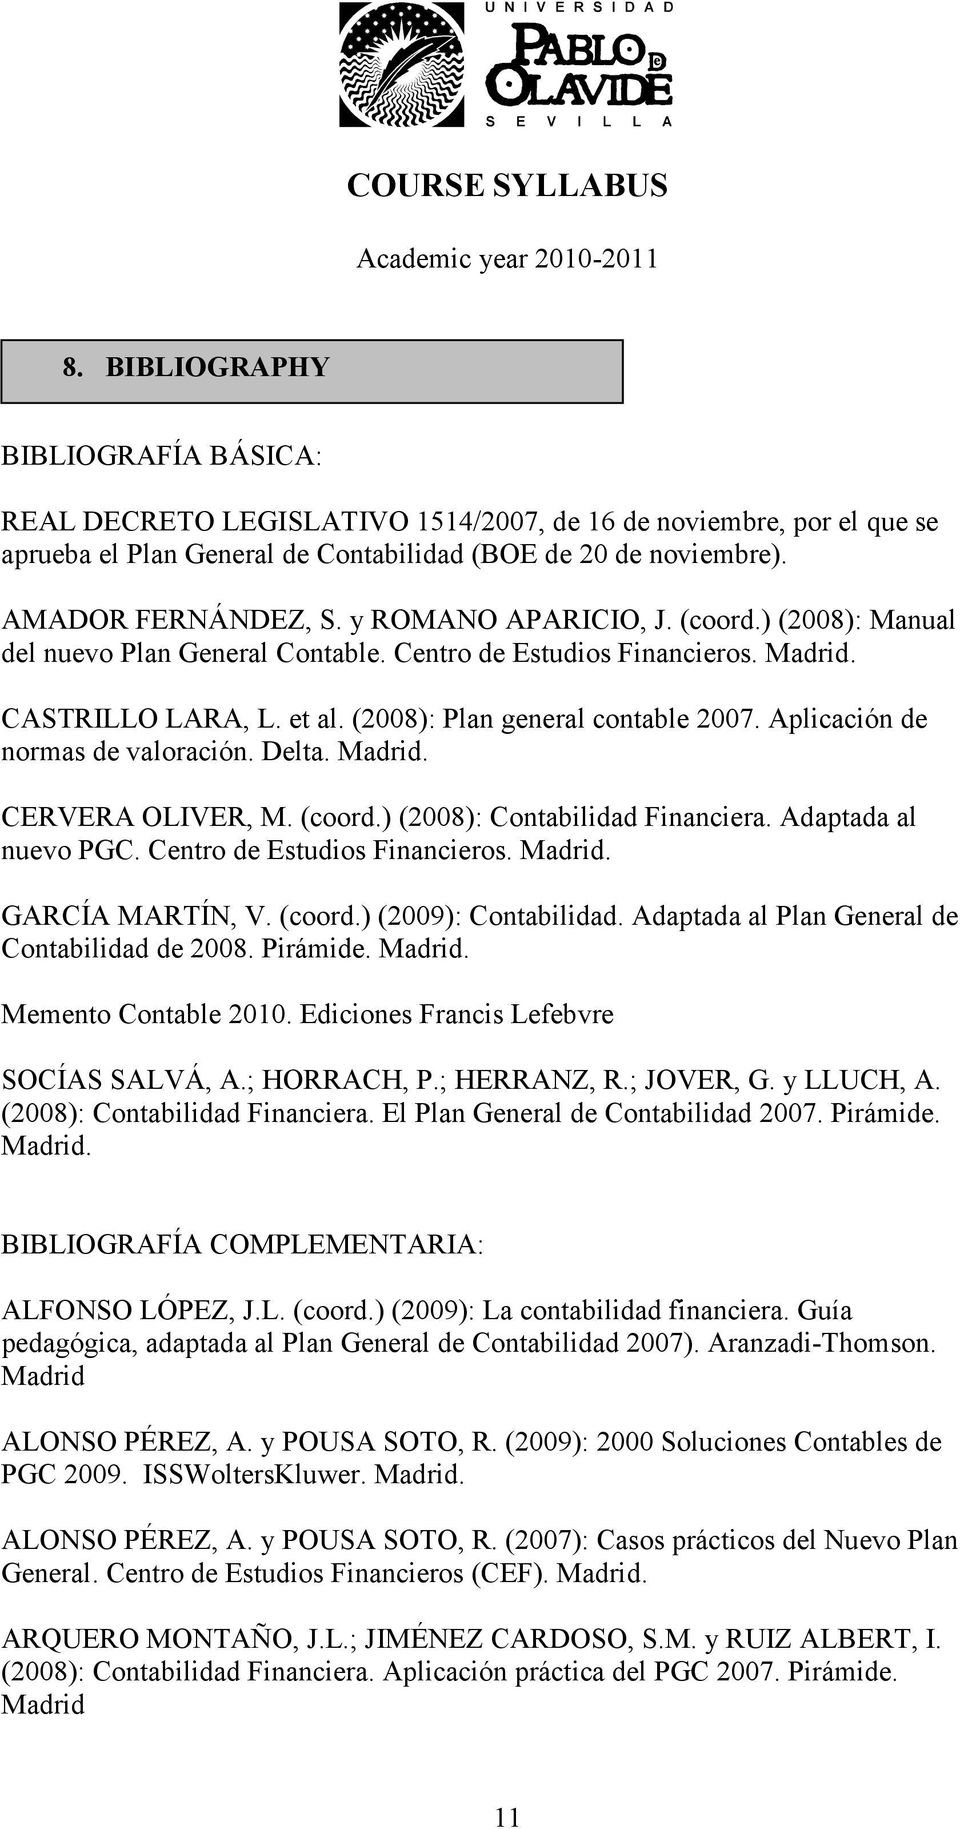 Aplicación de normas de valoración. Delta. Madrid. CERVERA OLIVER, M. (coord.) (2008): Contabilidad Financiera. Adaptada al nuevo PGC. Centro de Estudios Financieros. Madrid. GARCÍA MARTÍN, V. (coord.) (2009): Contabilidad.